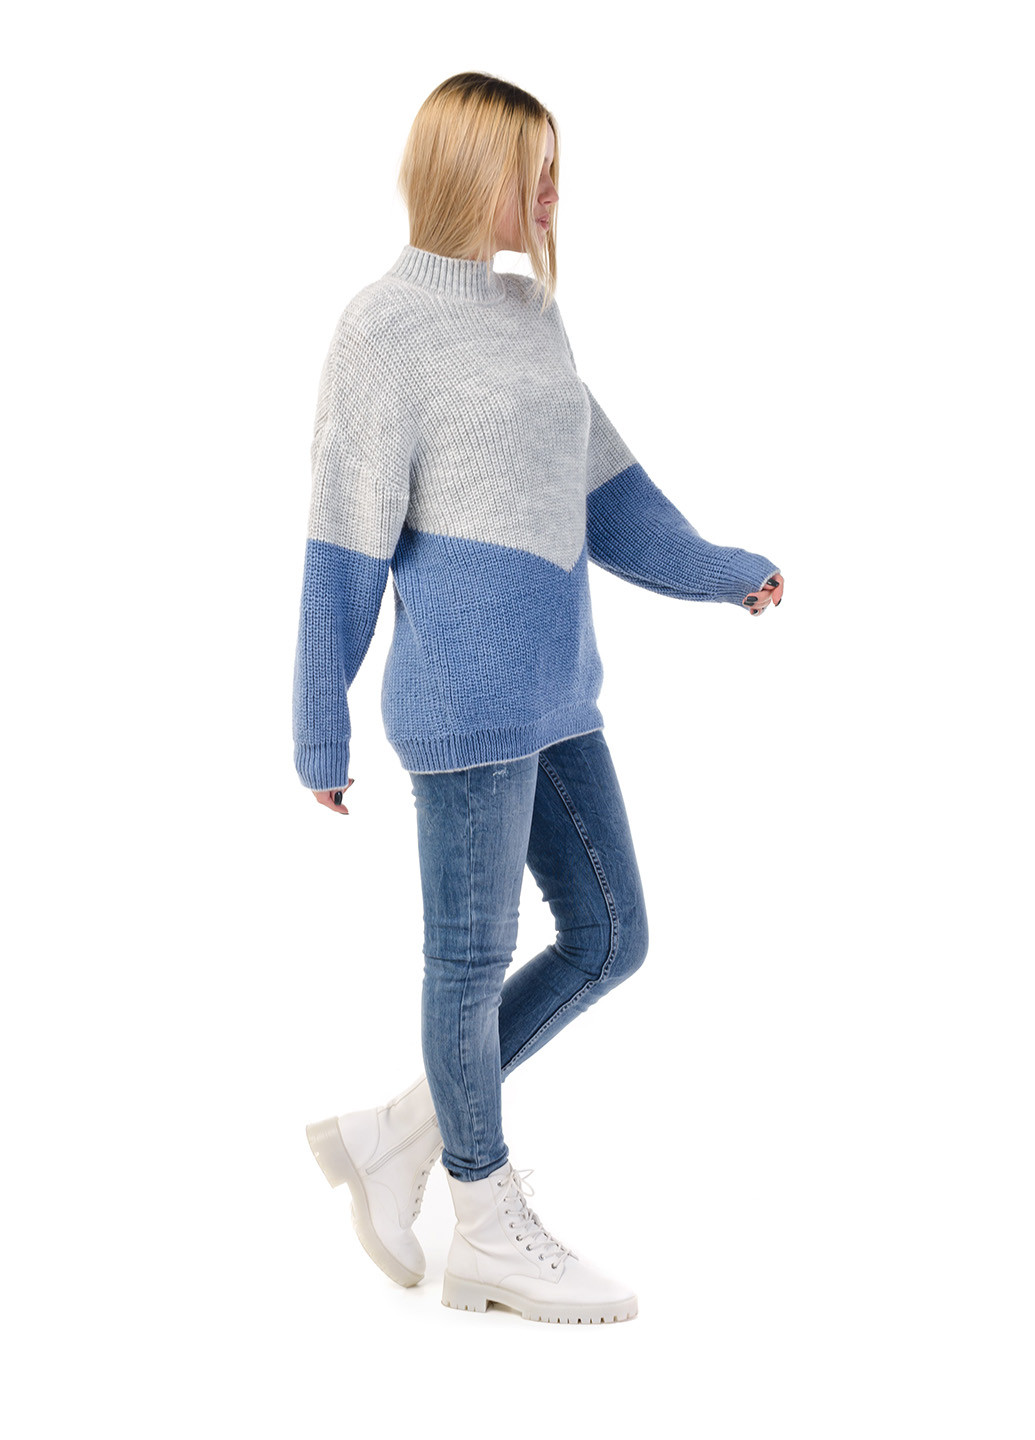 Синий зимний свитер SVTR